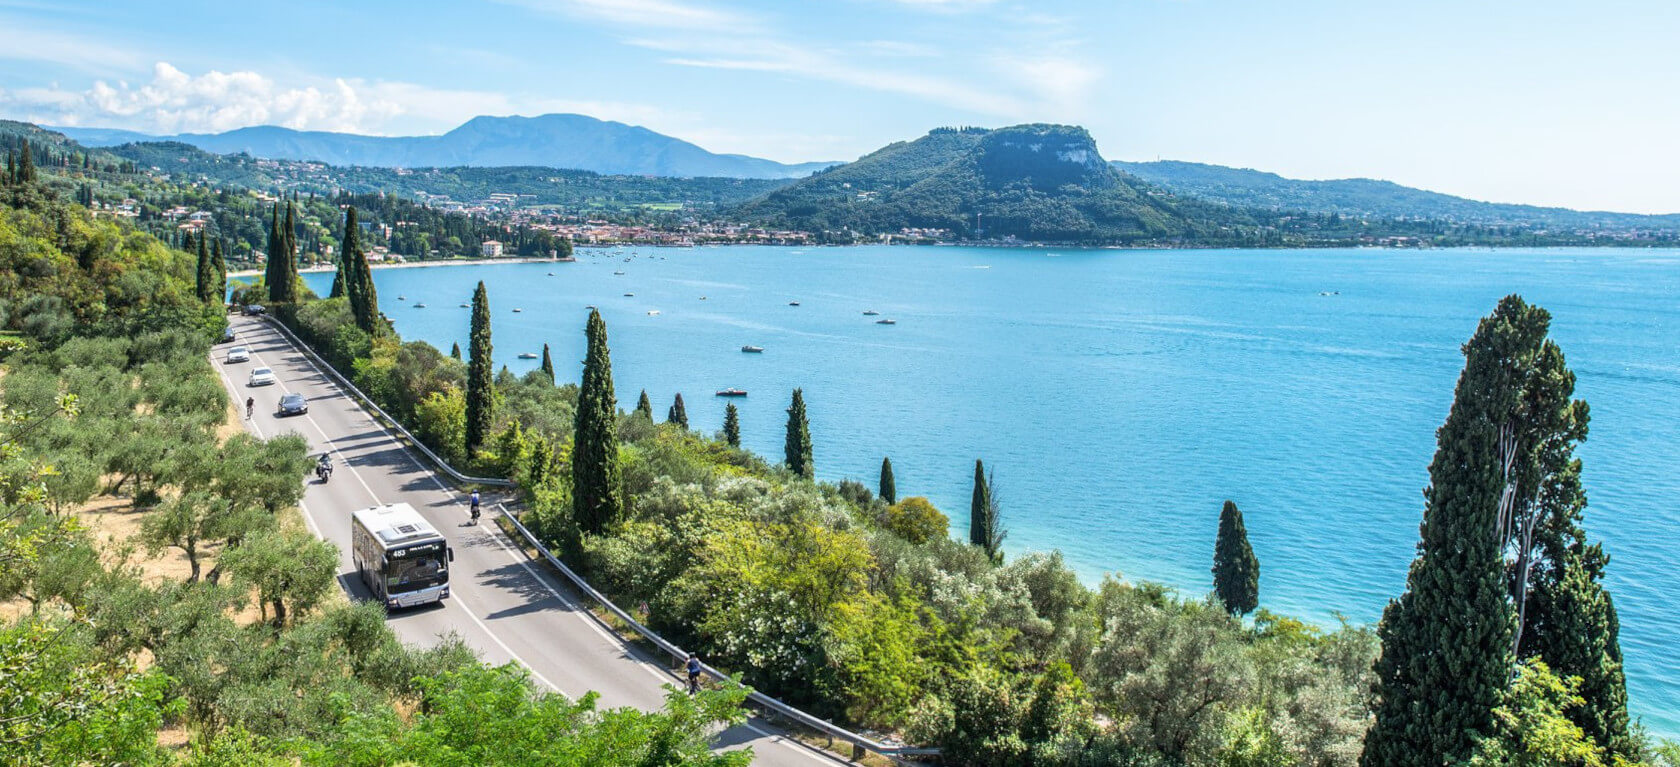 Tour and visits on Lake Garda